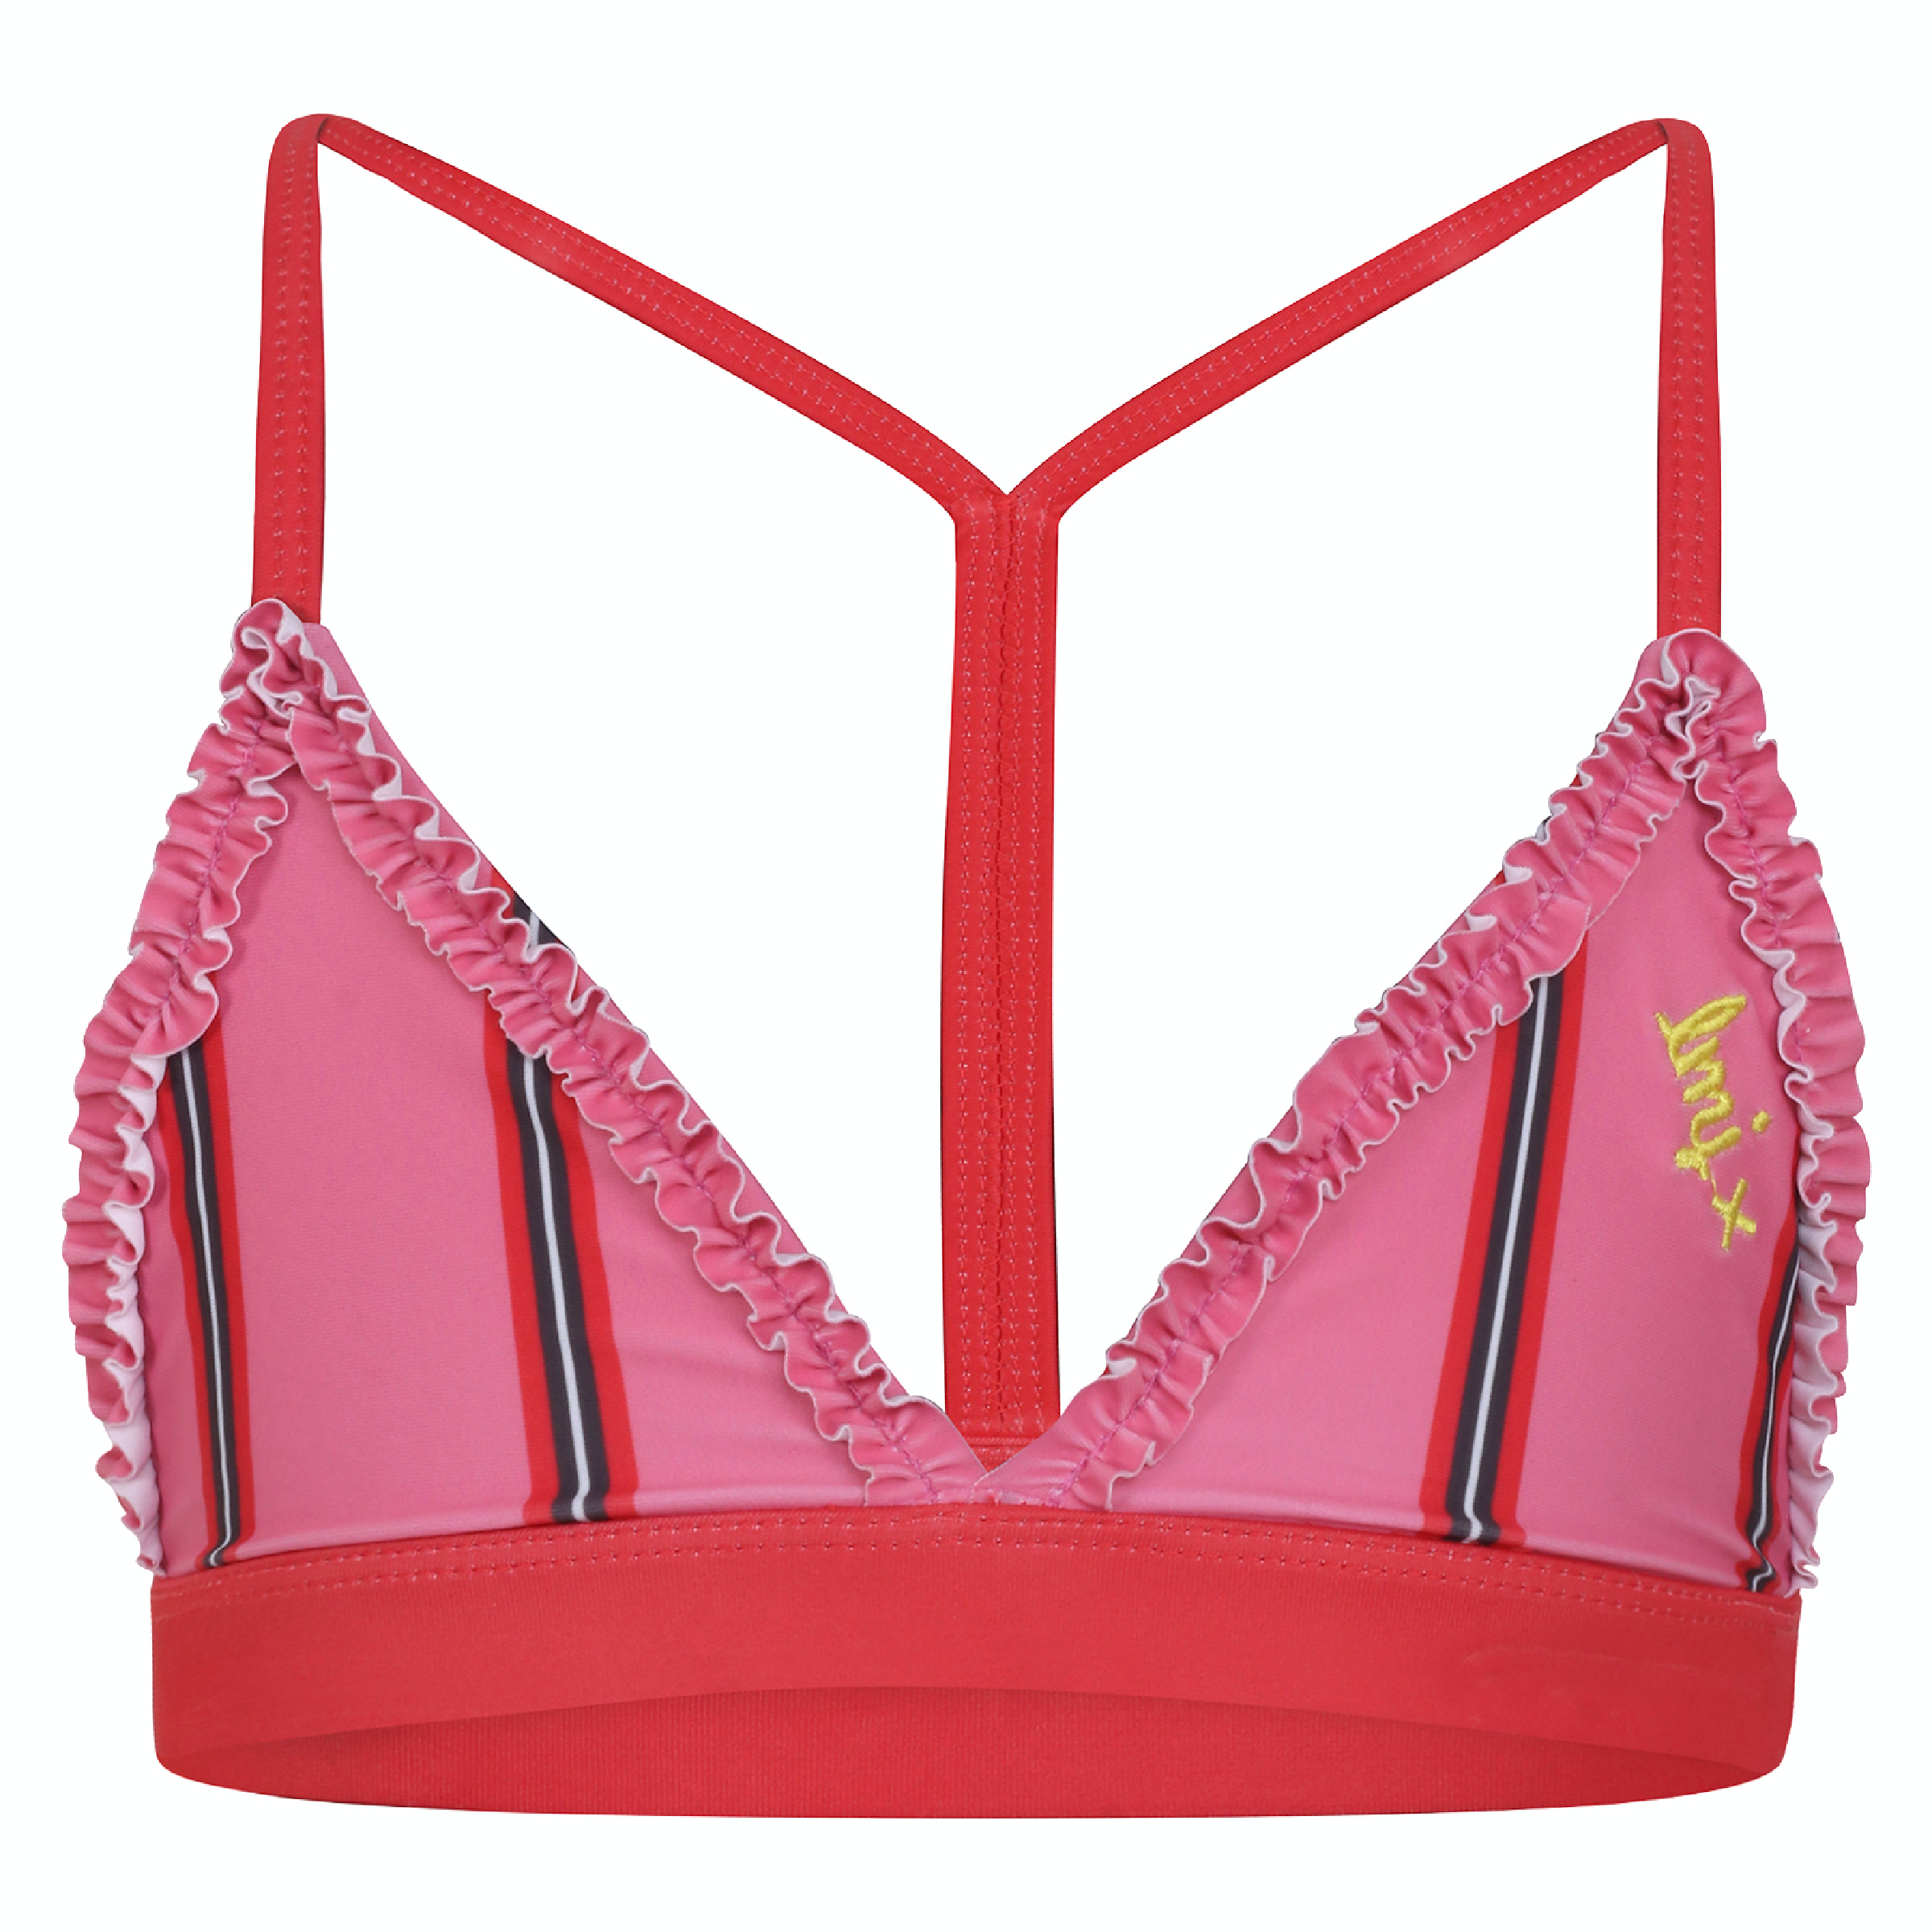 Meisjes Bikini van Miss Juliette in de kleur Roze in maat 146, 152.